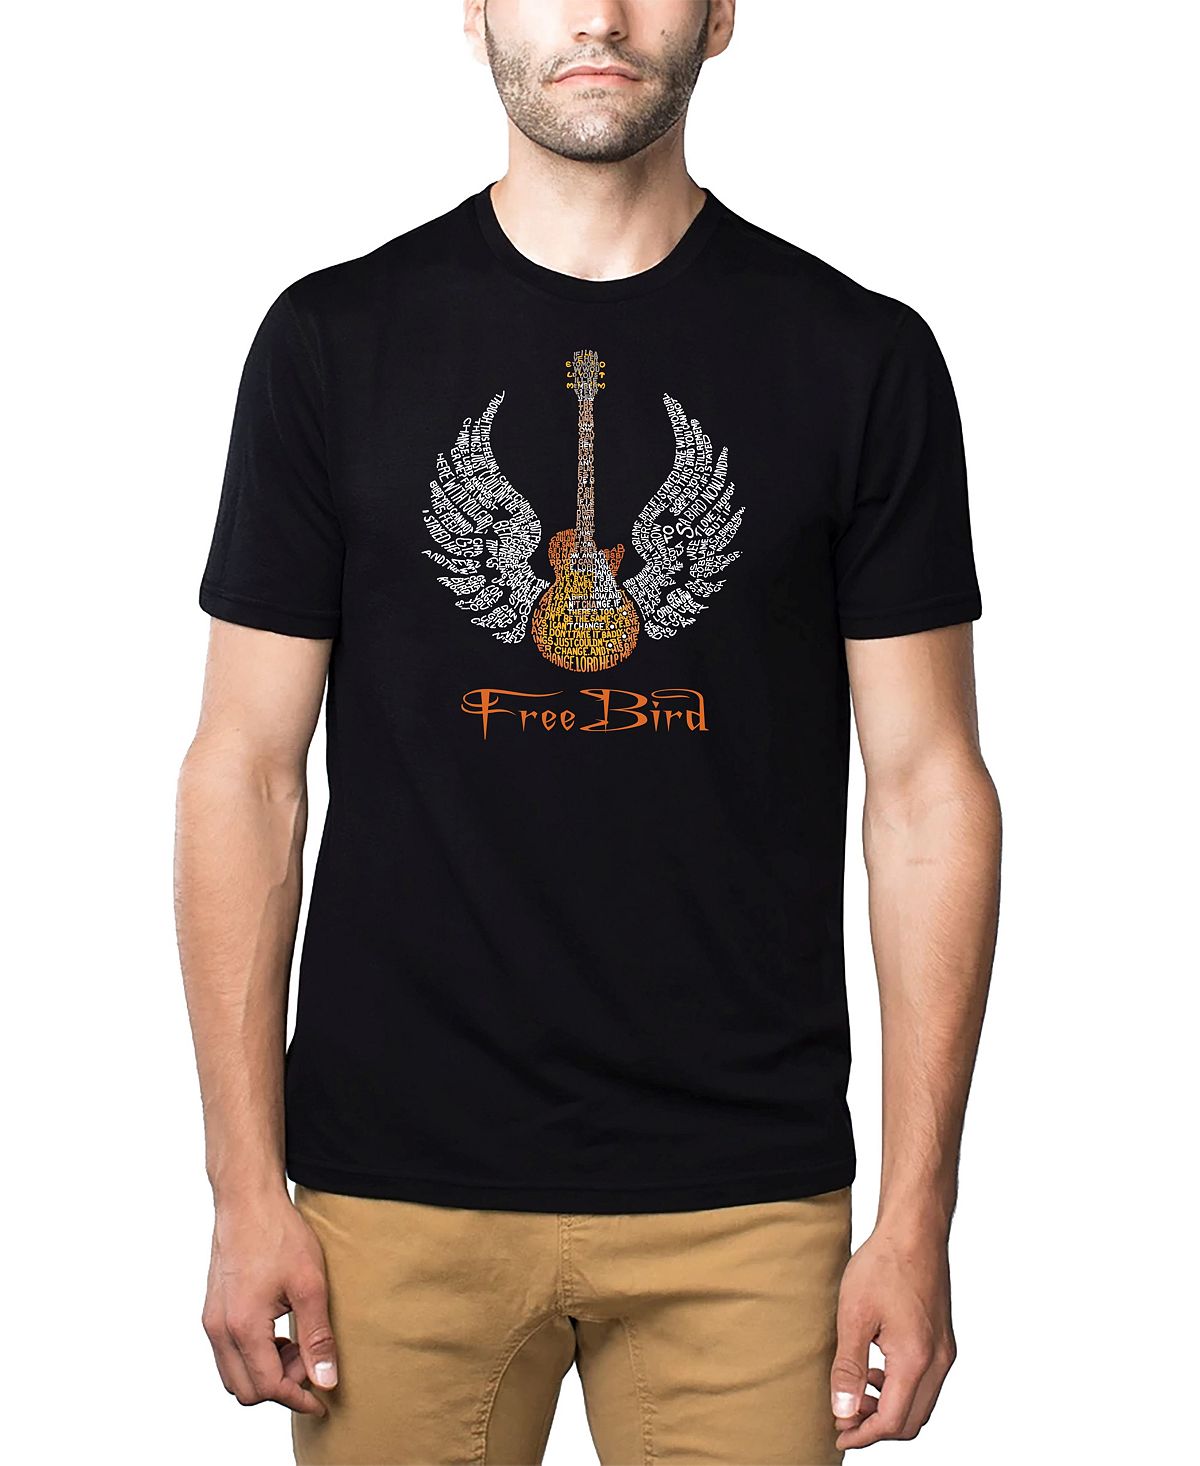 Мужская футболка premium blend word art - lyrics to freebird LA Pop Art, черный